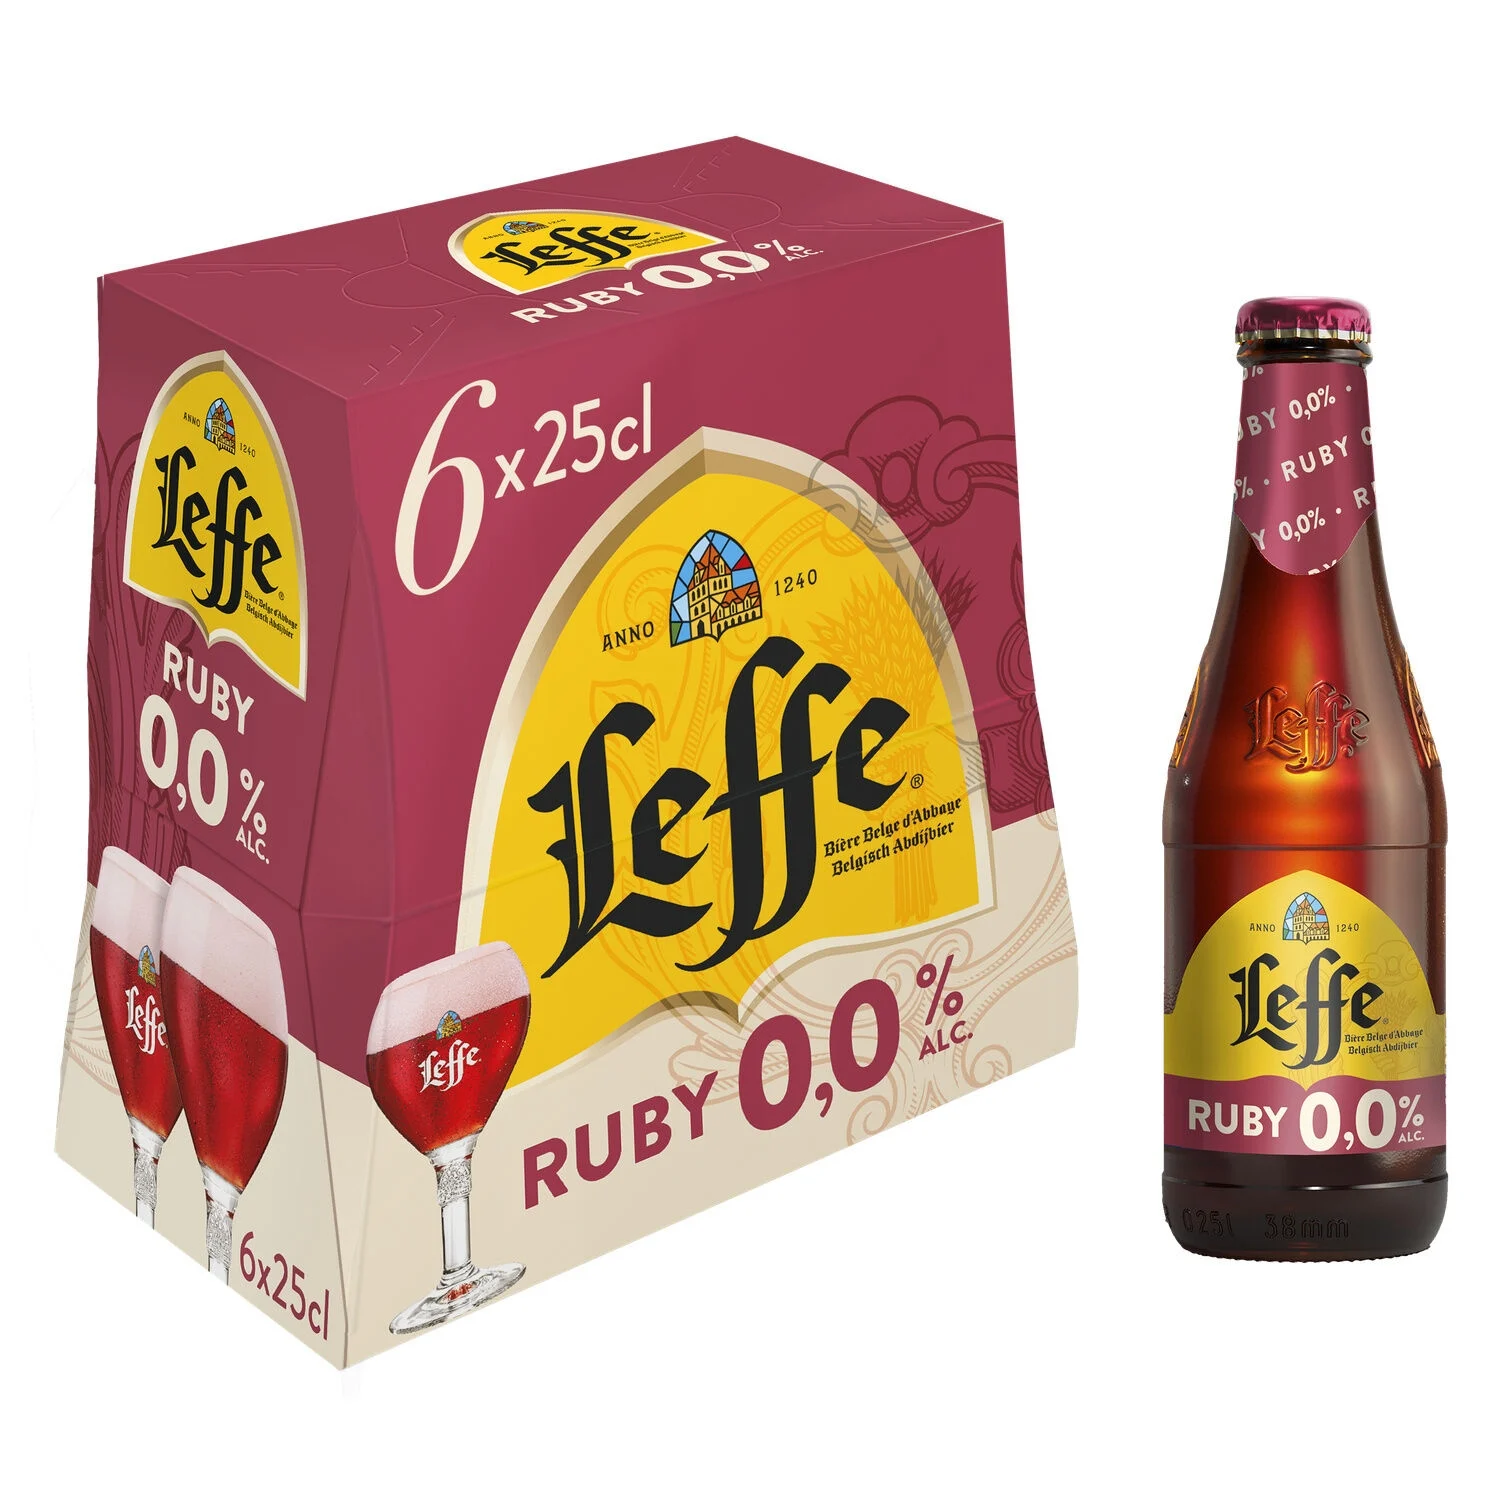 Рубиновое безалкогольное пиво, 6x25cl - LEFFE